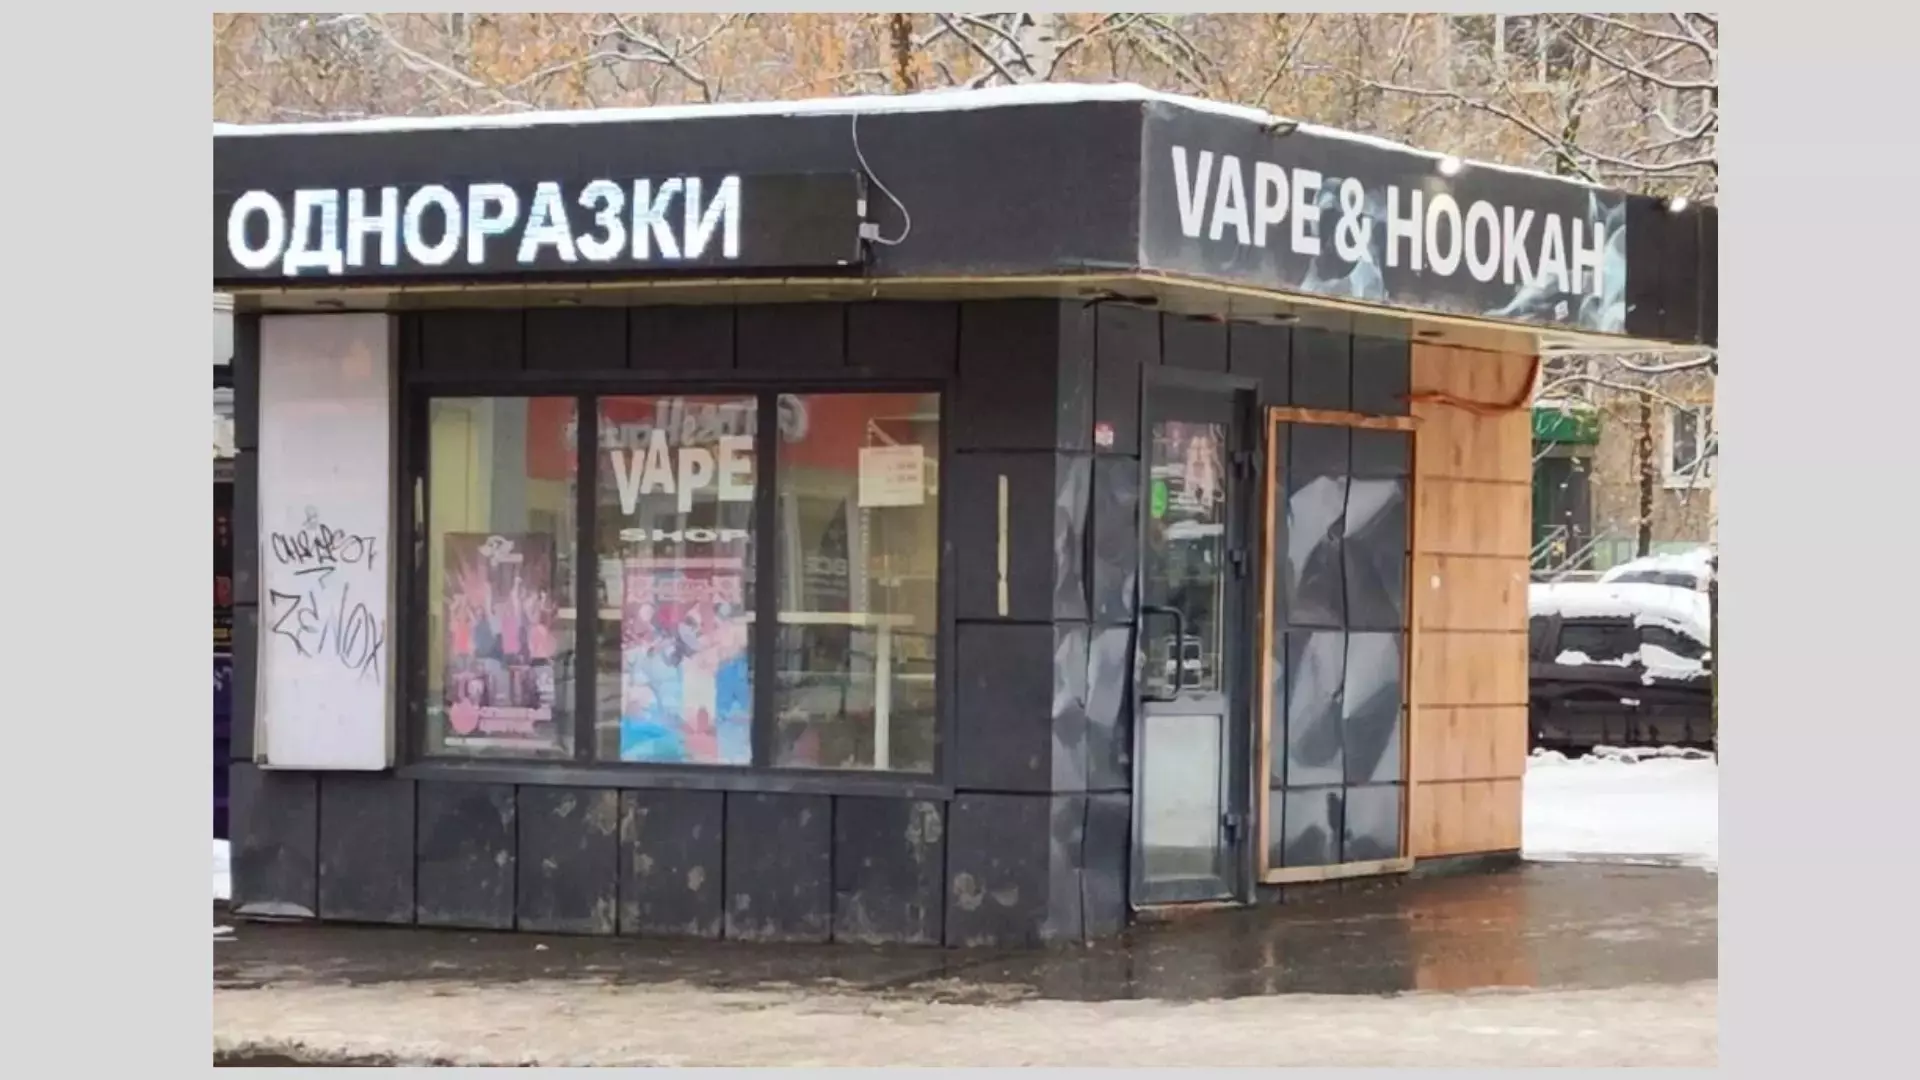 Депутат Госсовета рассказал о запрете продажи вэйпов в киосках Ижевска